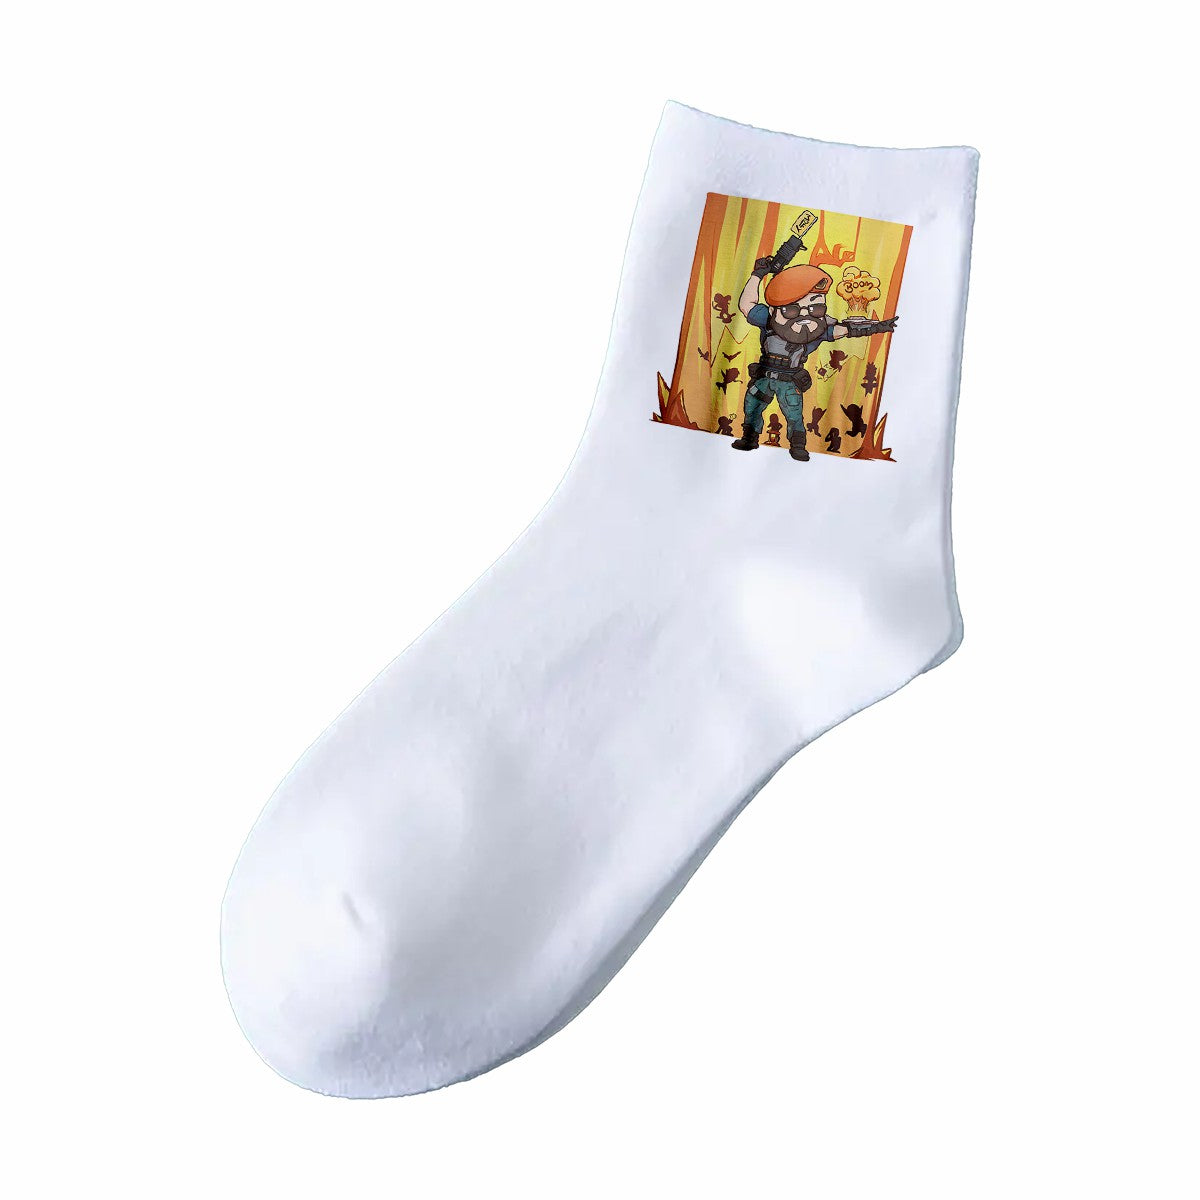 VALORANT 3 Pairs CHIBI Custom Socks